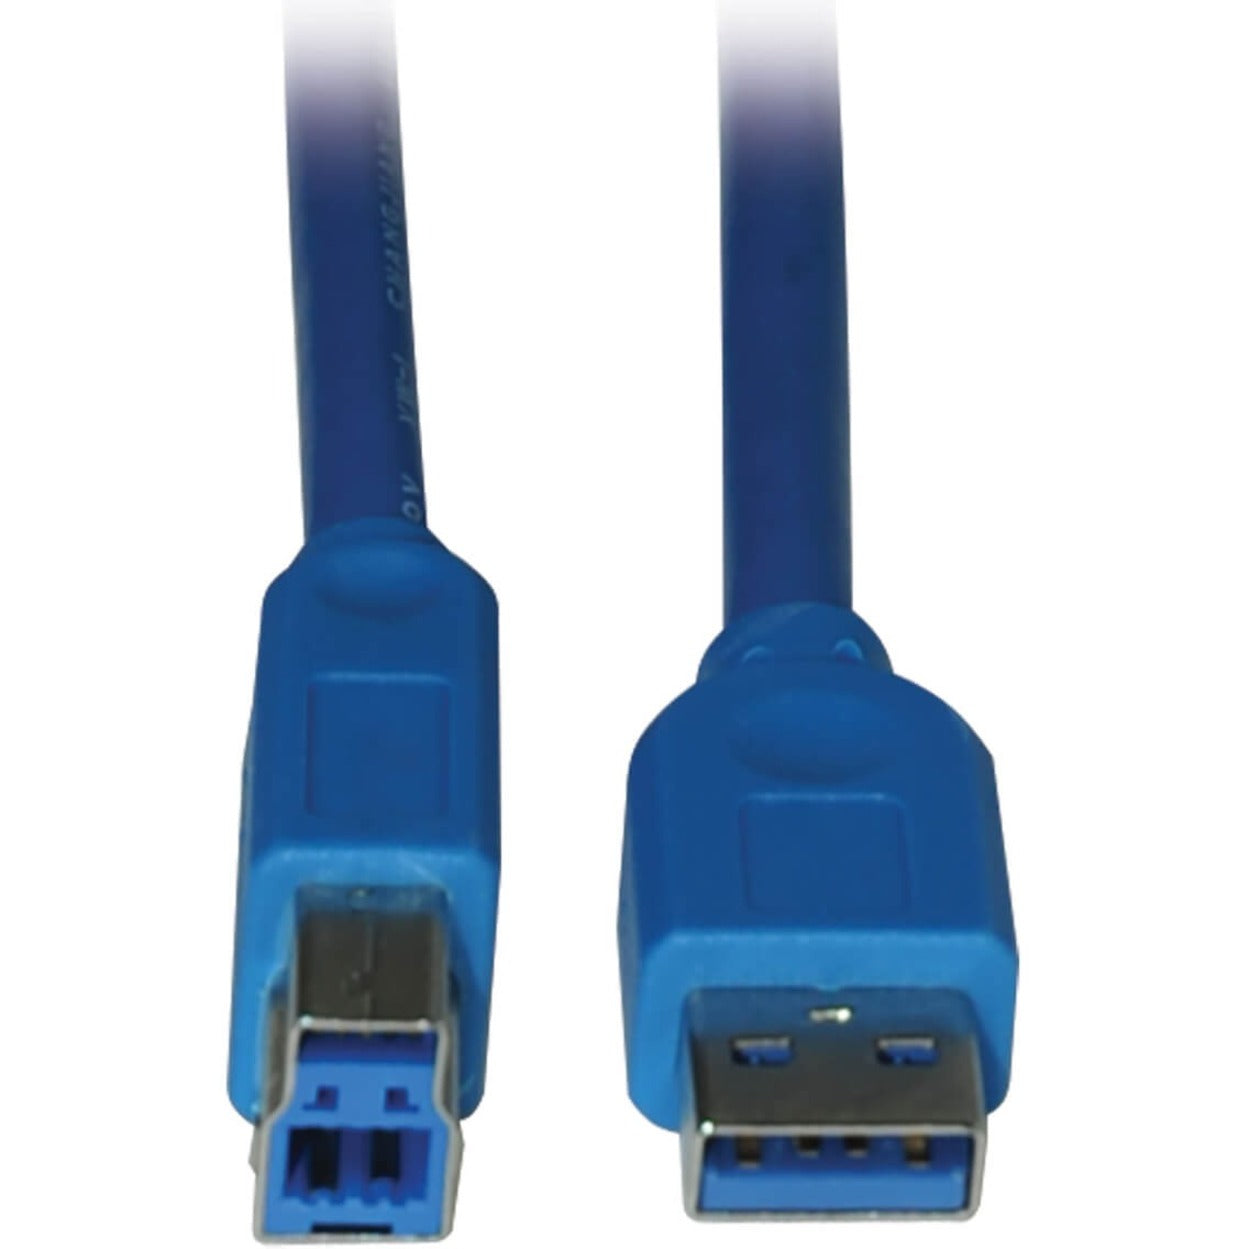 تريب لايت U322-006 كبل جهاز USB 3.0 سوبر سبيد AB 6FT، أزرق - نقل بيانات عالي السرعة لأجهزتك العلامة التجارية: تريب لايت